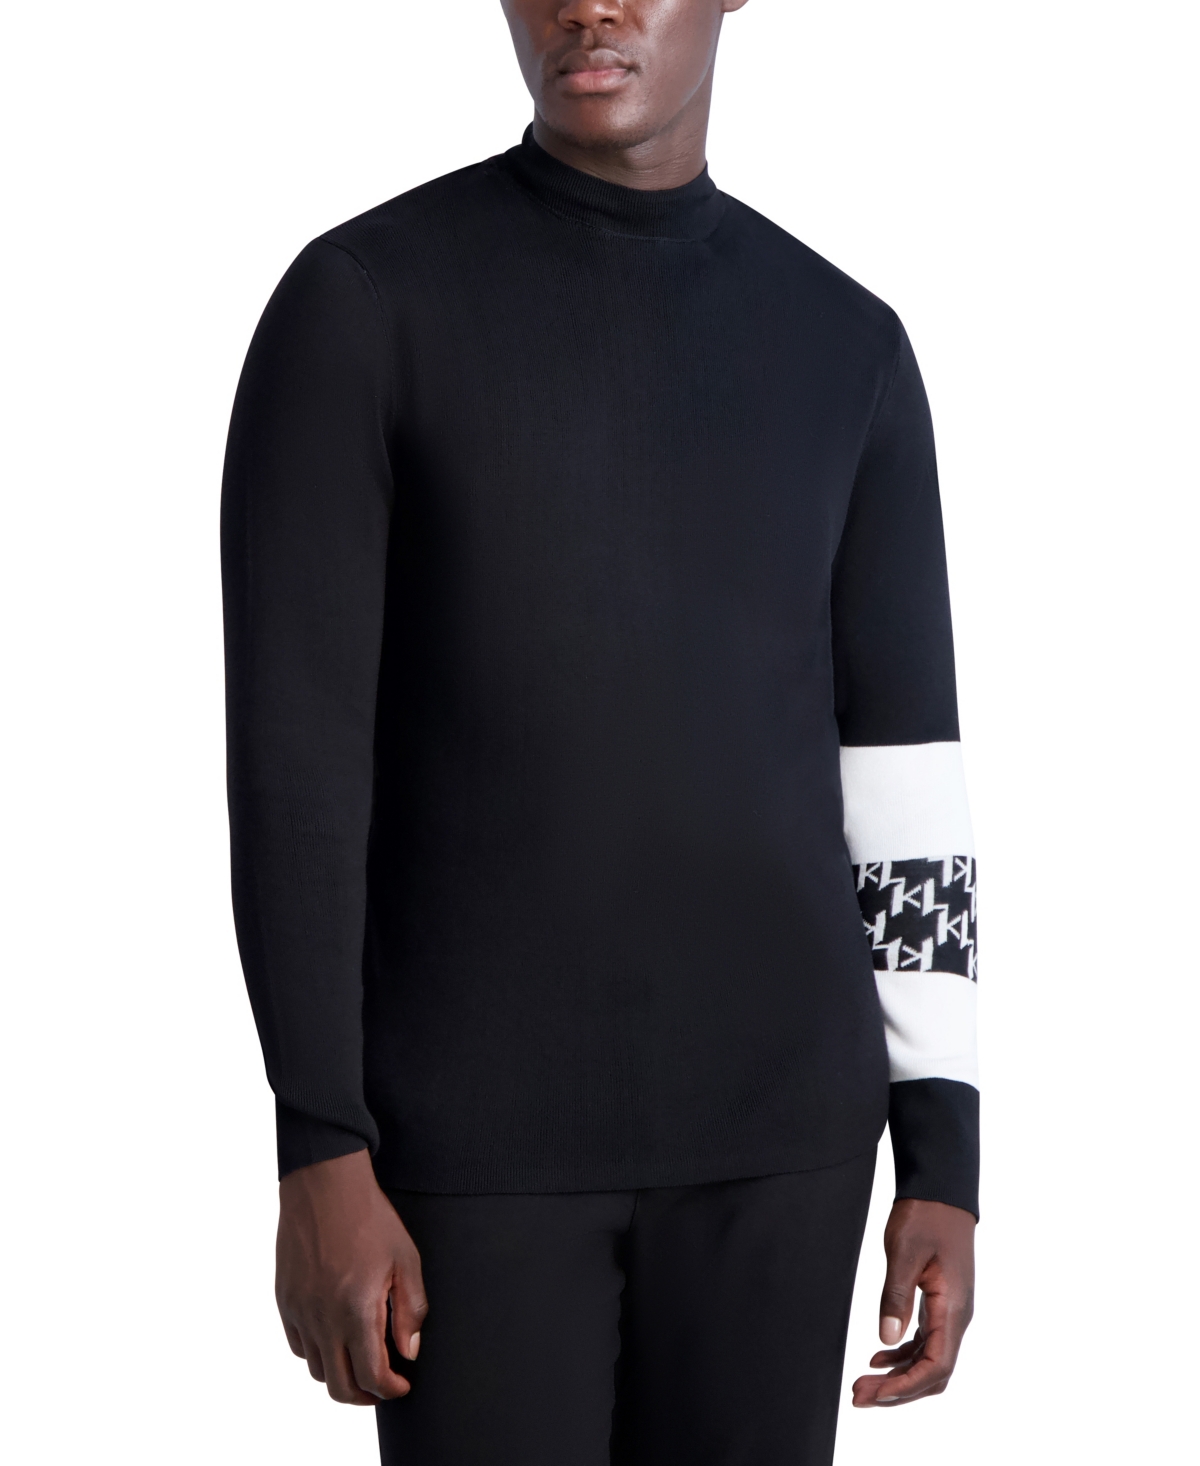 Men's Long Sleeve Mock Neck Sweater - Black, White